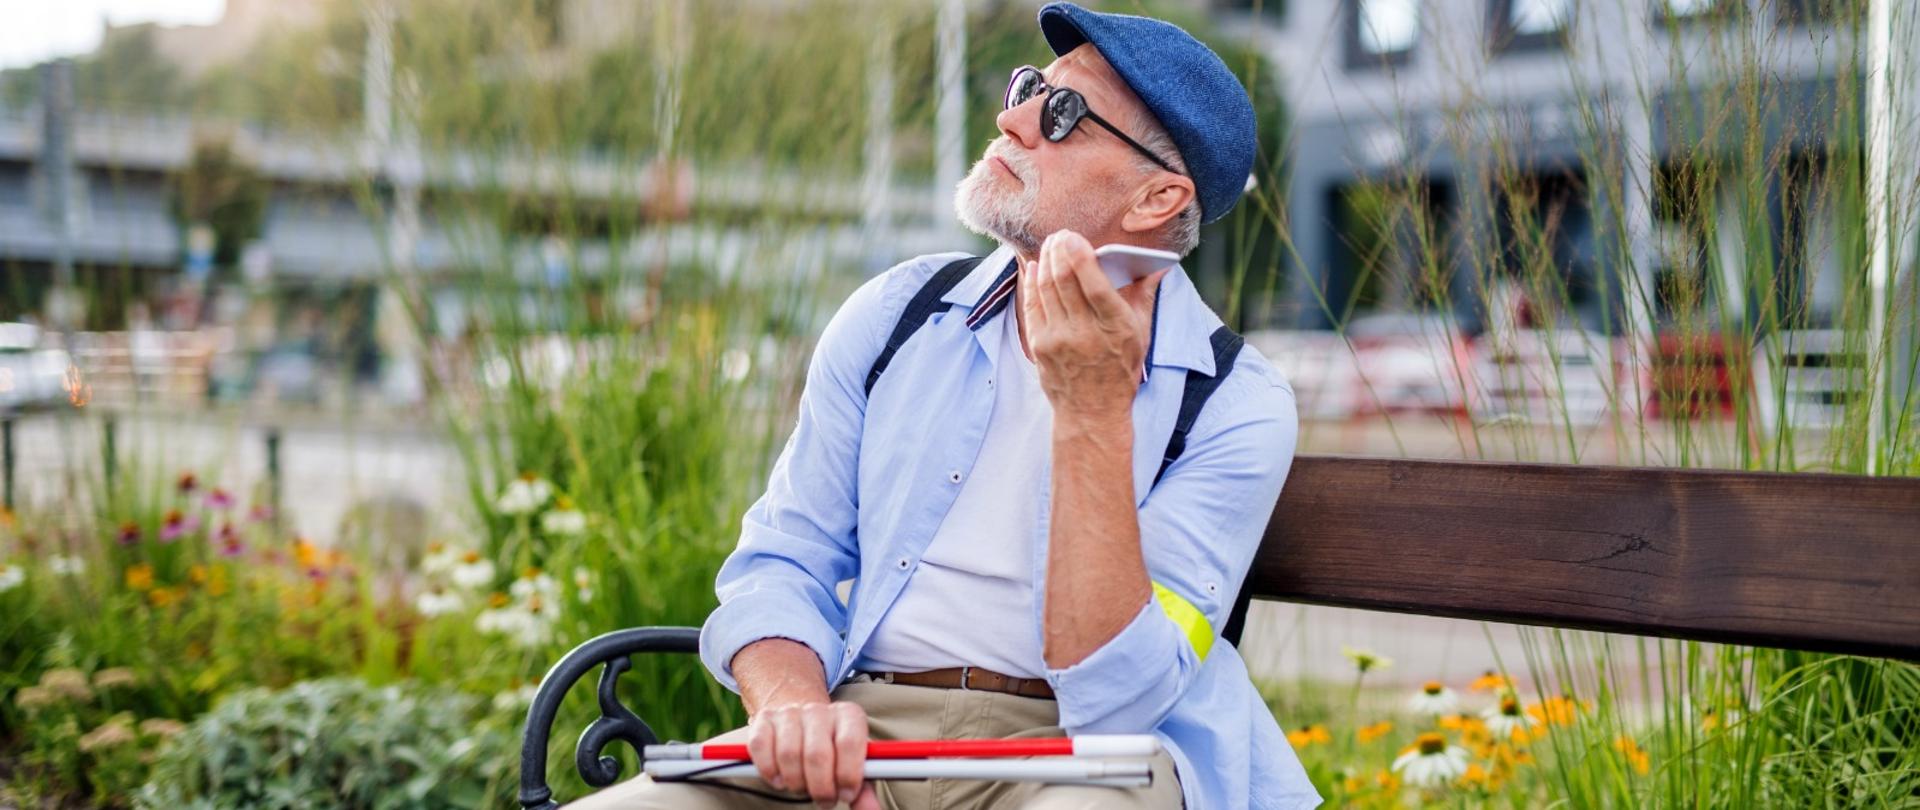 Na zdjęciu niewidomy mężczyzna trzymający przy uchu smartfon. Mężczyzna siedzi na ławce, w tle widać kwiaty i rośliny. Na dalszym planie rozmyte budynki. Ubrany jest w jasne spodnie, błękitną koszulę i niebieski kaszkiet. W dłoni trzyma złożoną białą laskę.